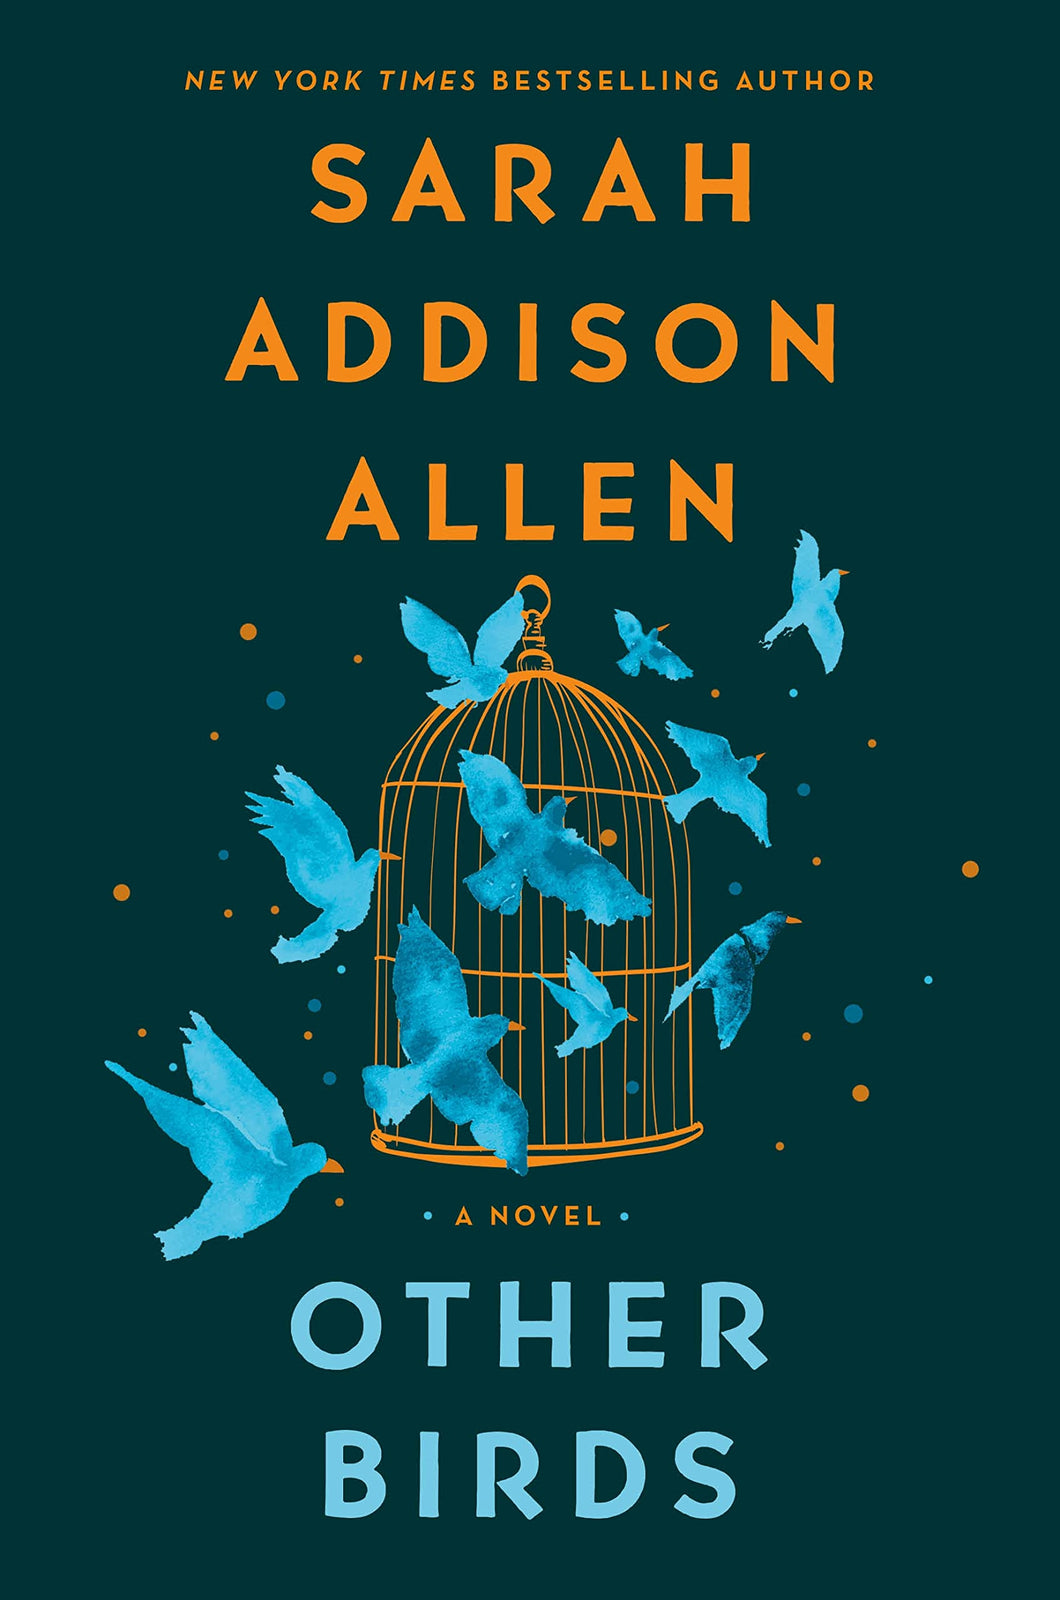 Other Birds [Sarah Addison Allen]